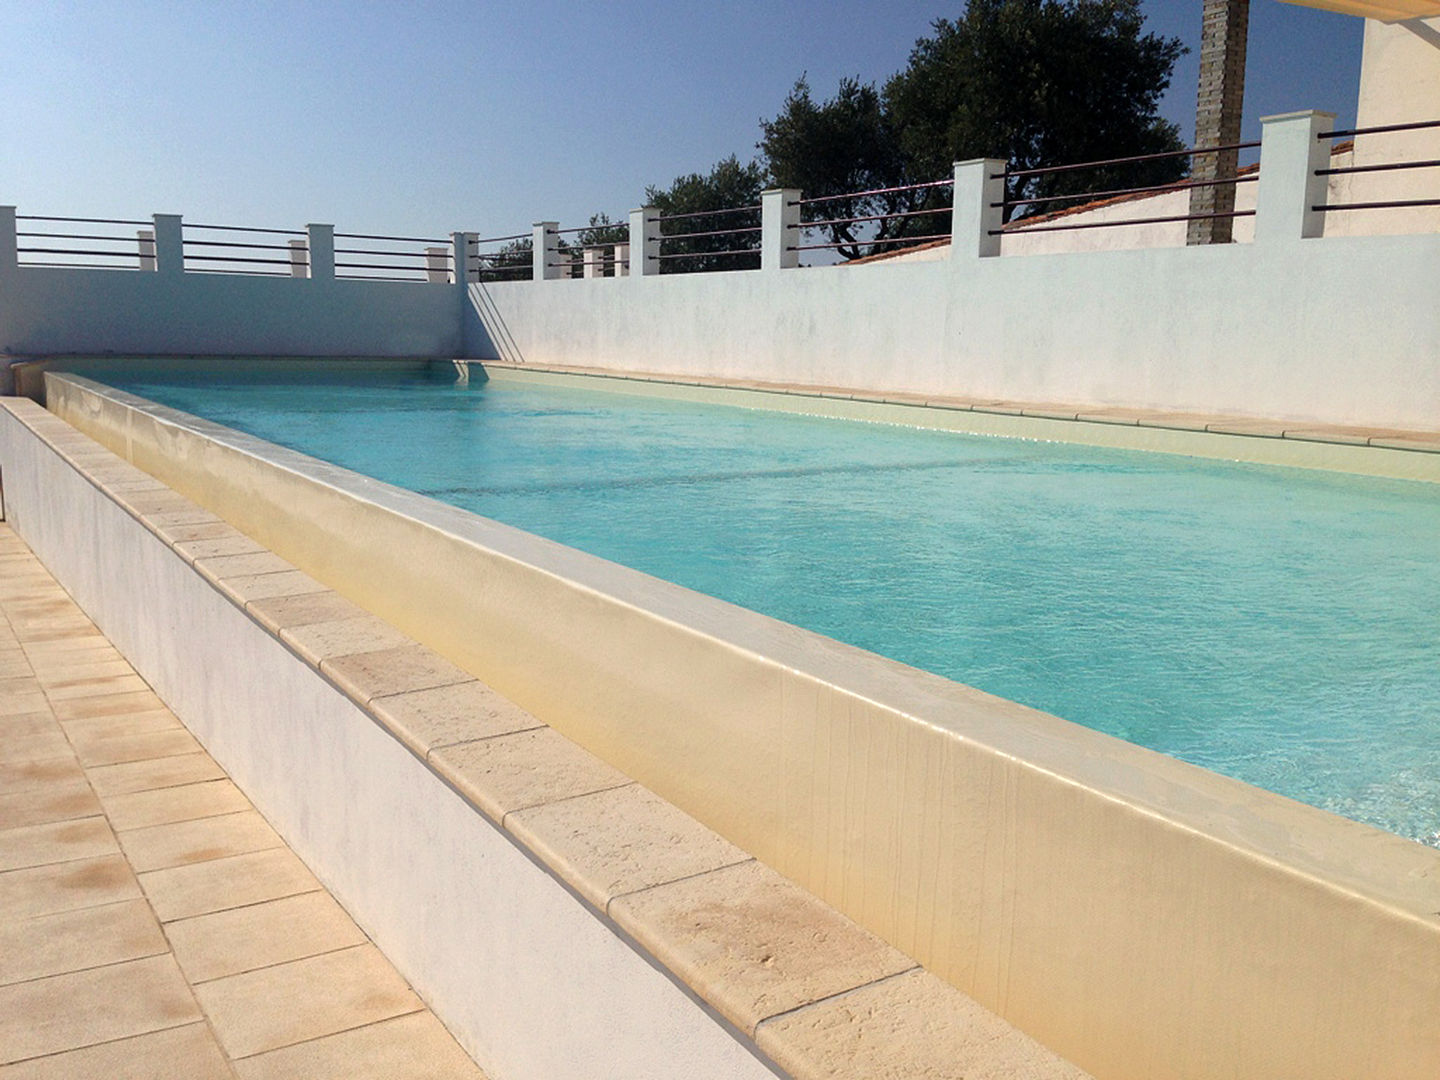 Soleo Infinity, Soleo Soleo Piscinas modernas piscina de jardim,piscina ao ar livre,piscina